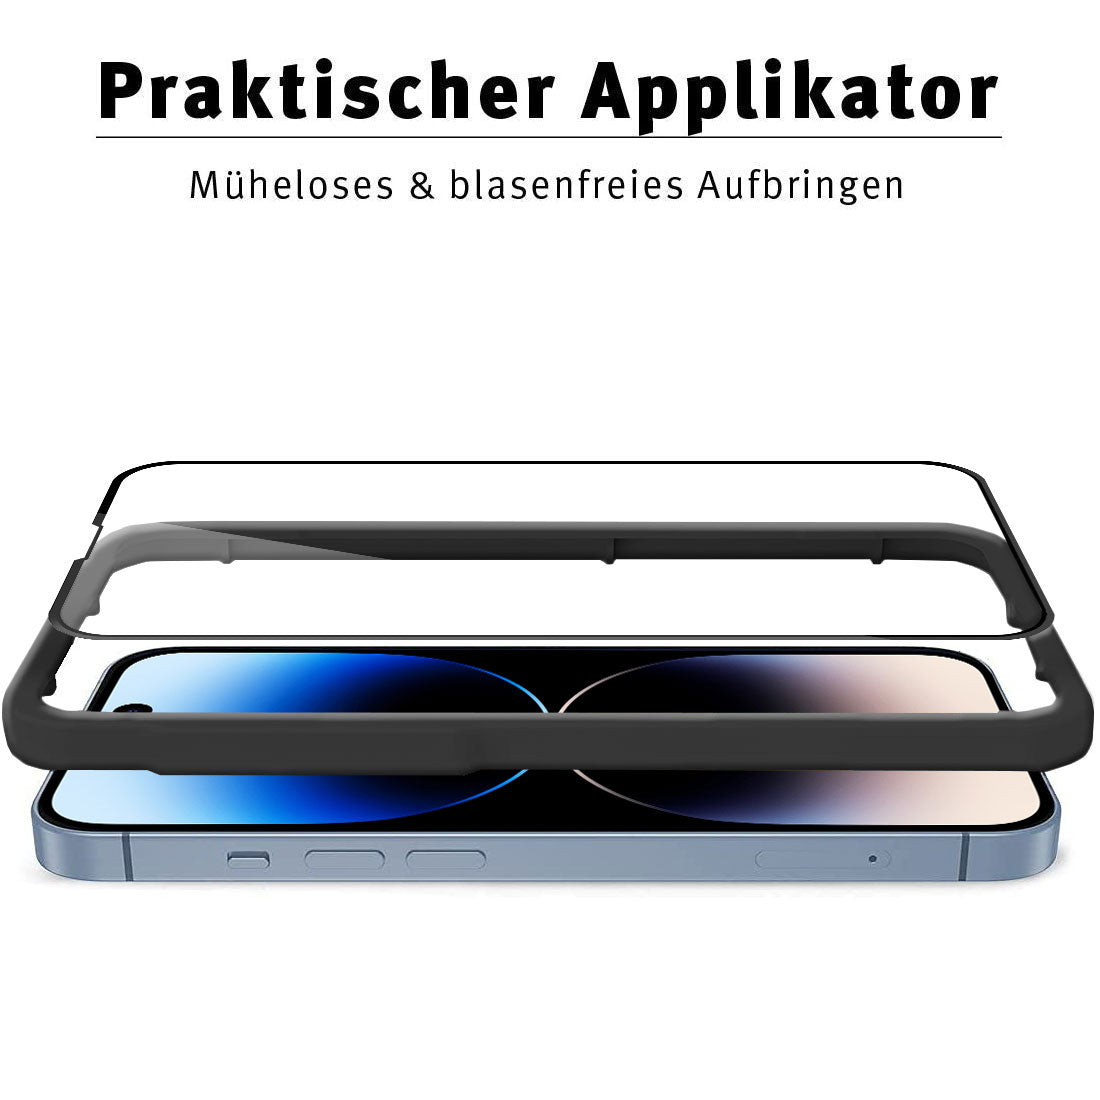 ArktisPRO iPhone 14 Pro Max FULL COVER Displayschutz GLAS - hüllenfreundlich